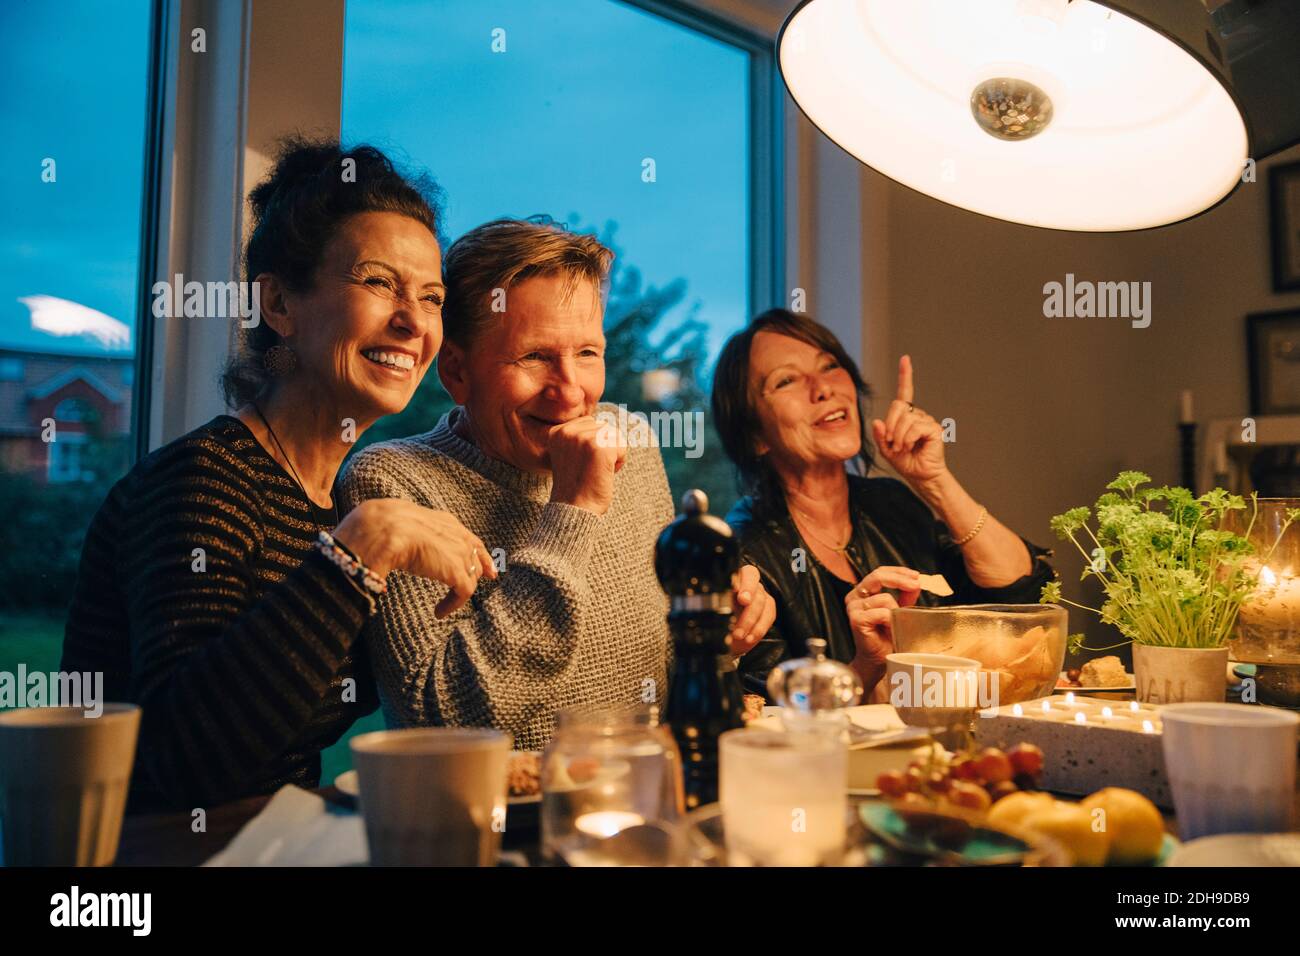 Feliz mujer mayor y hombre sentado en una mesa de comedor iluminada mientras disfruta de la cena Foto de stock